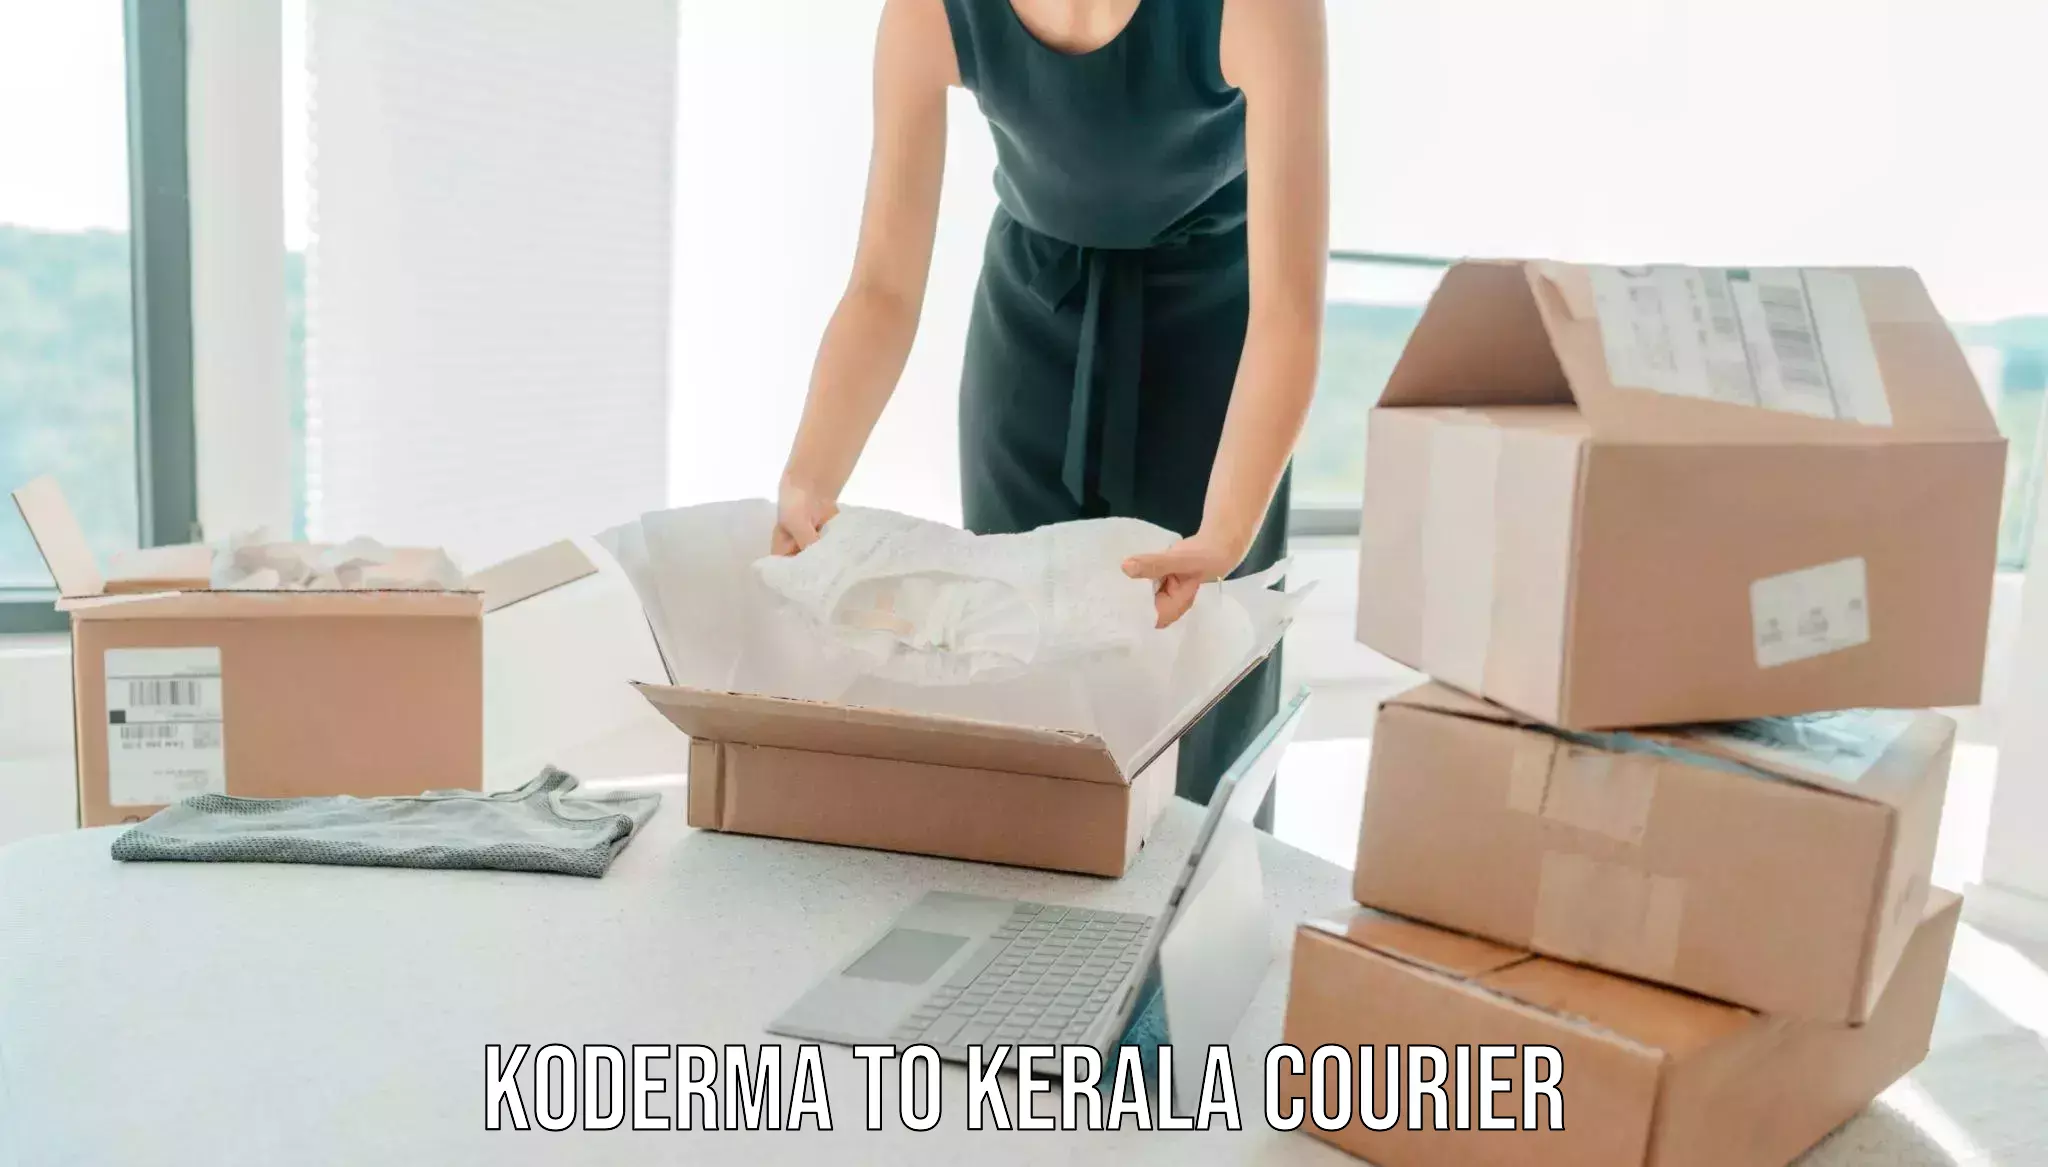 Trusted moving company Koderma to Narikkuni